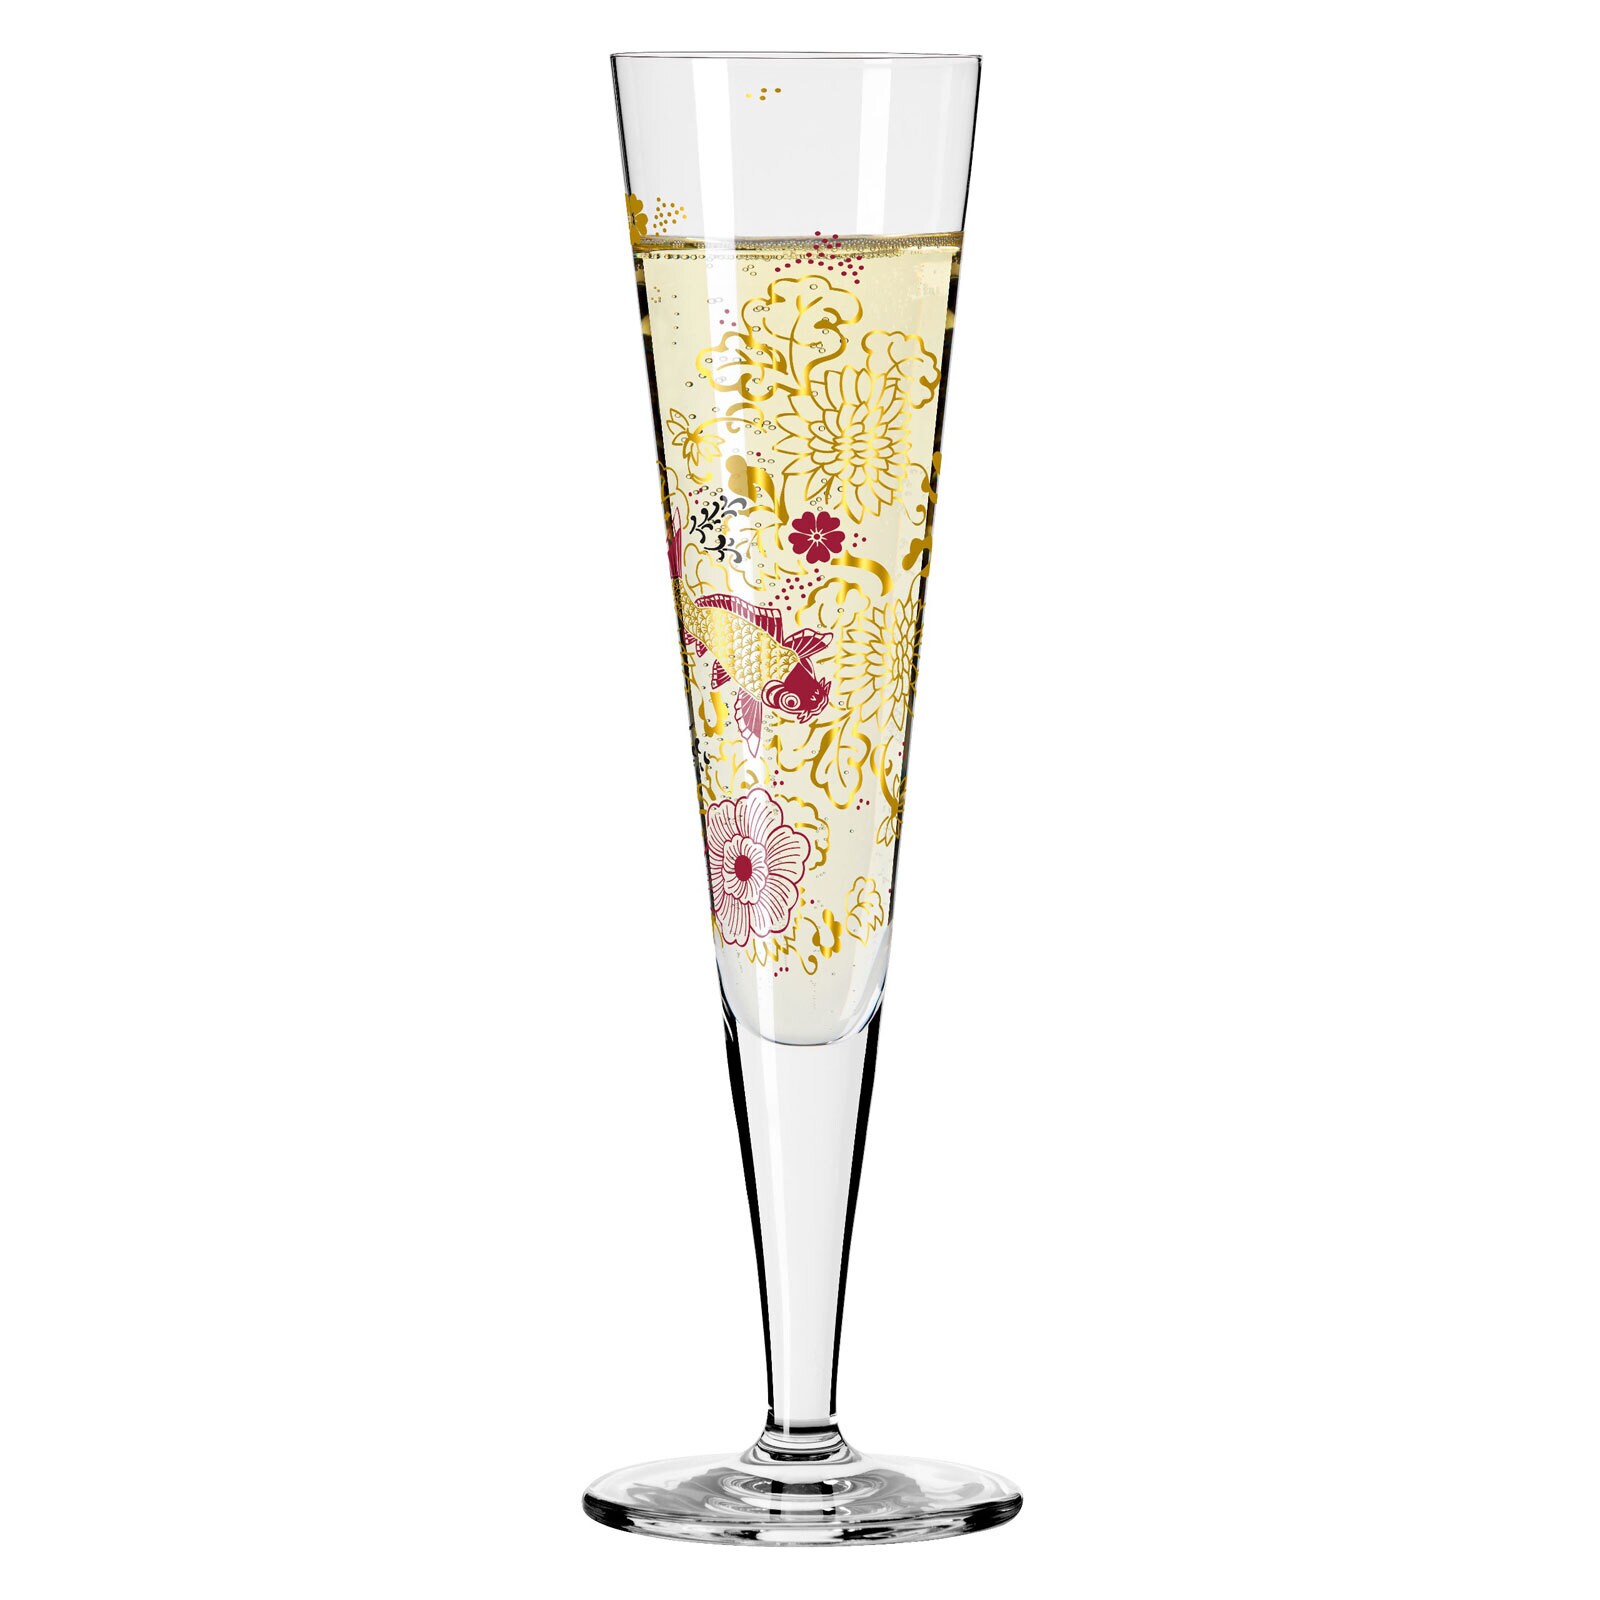 RITZENHOFF Champagnerglas GOLDNACHT IV K. STOCKEBRAND